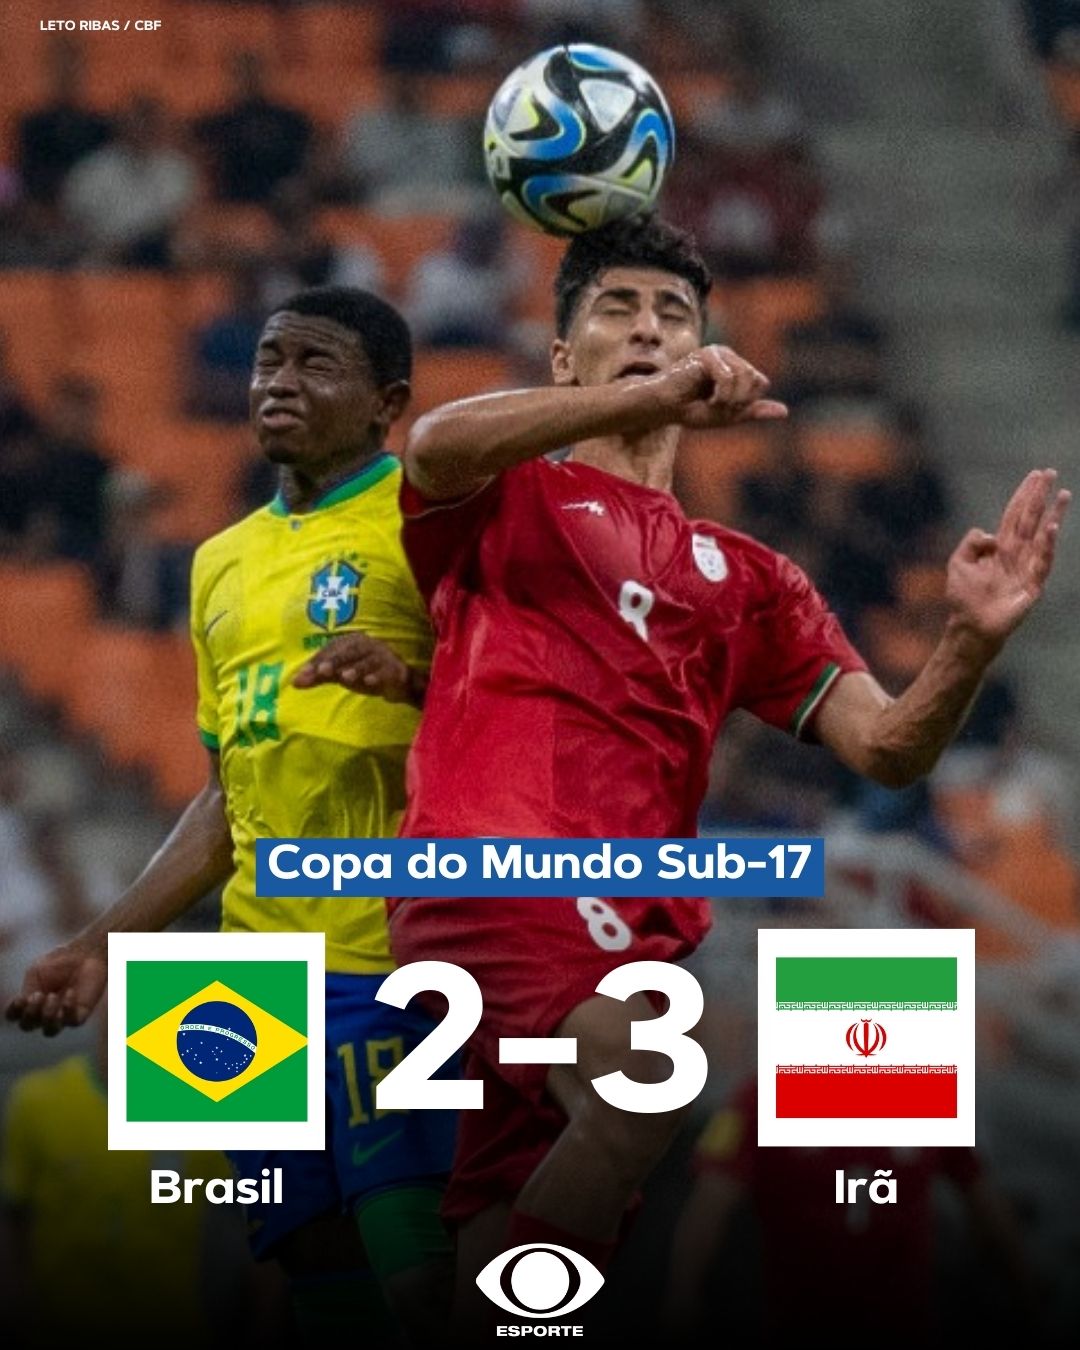 Brasil está no Grupo C da Copa do Mundo Sub-17, com Irã, Nova